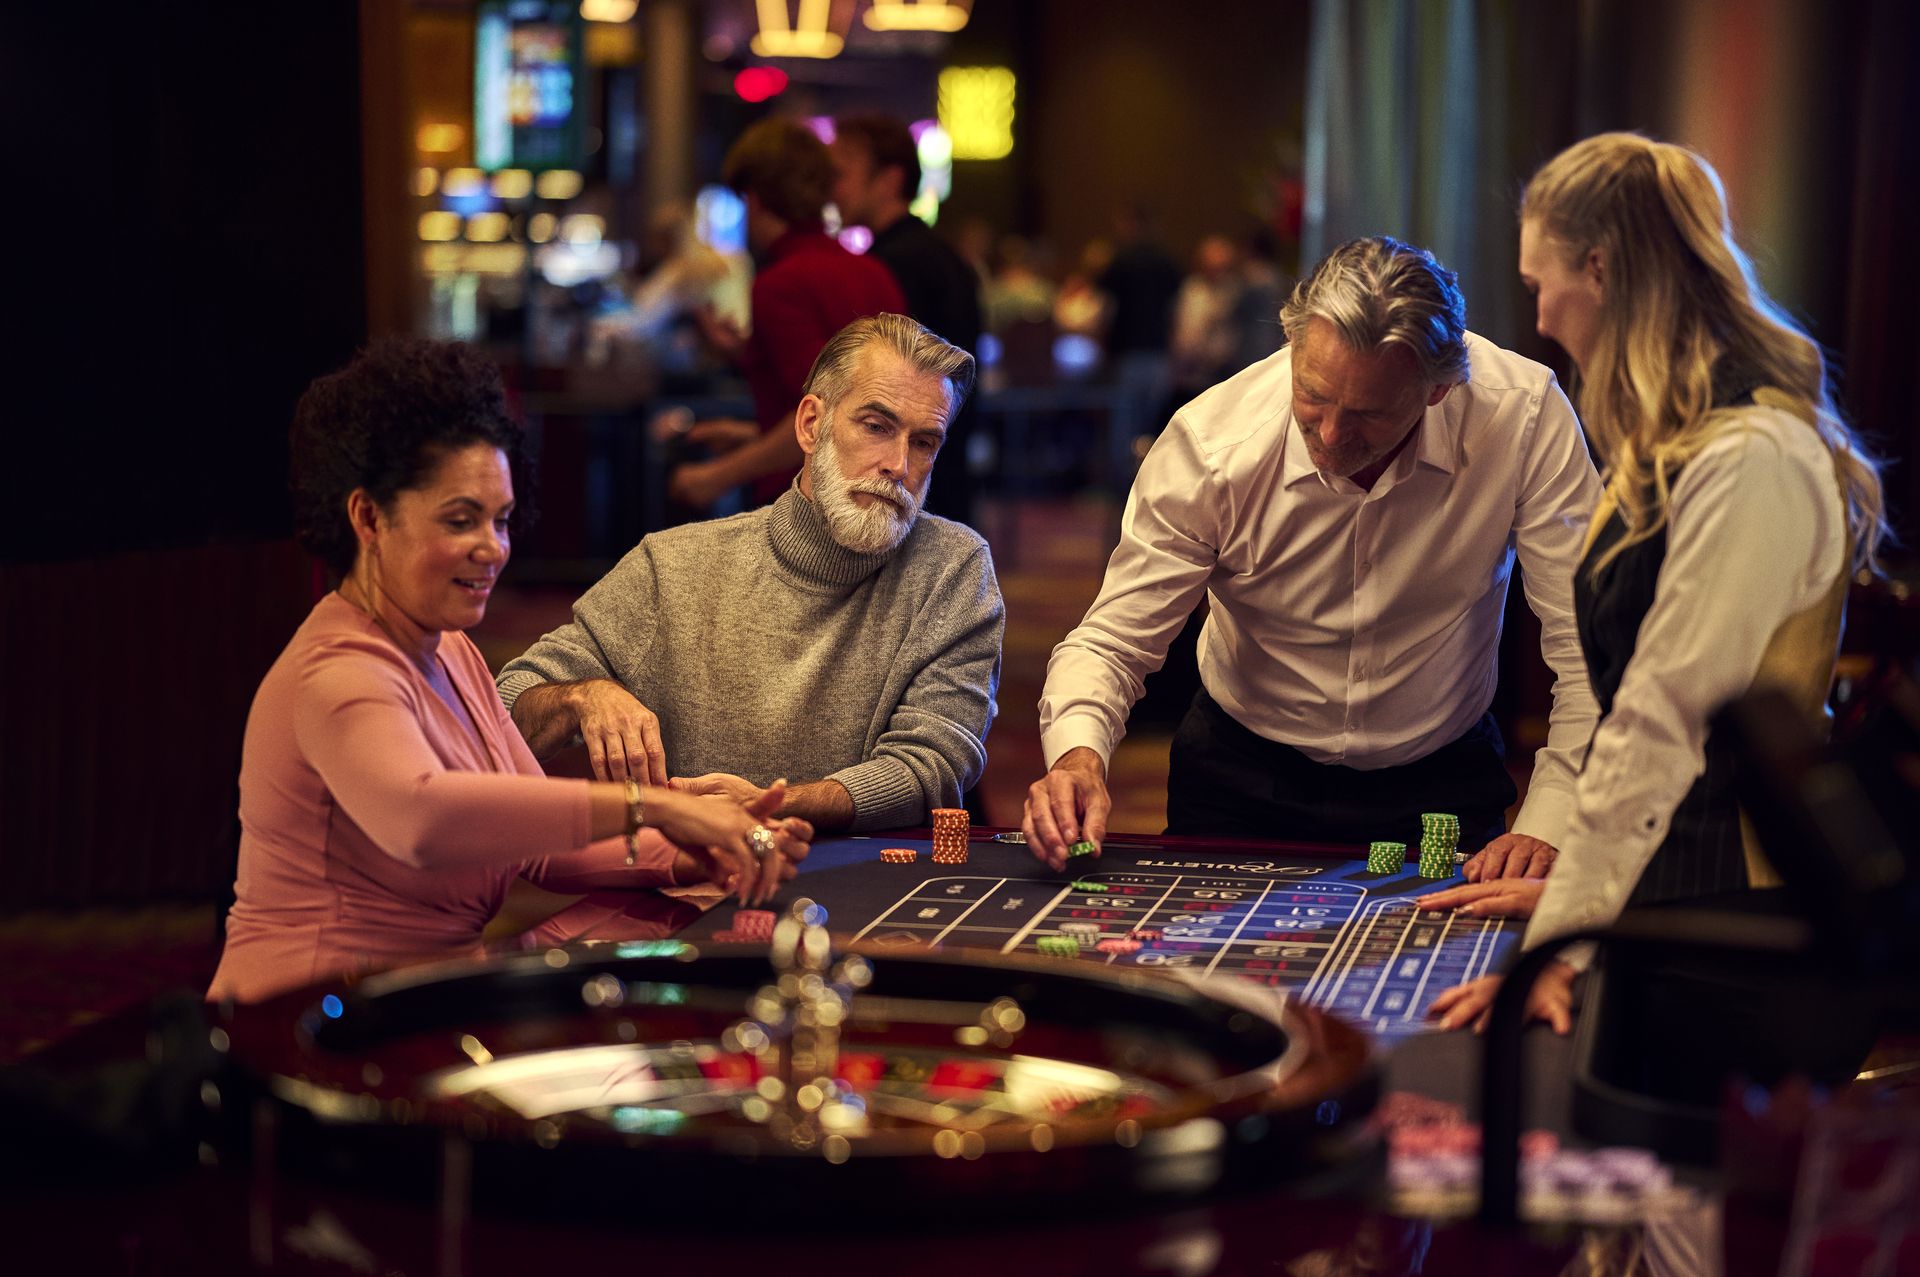 holland-casino-roulette-gasten-die-aan-speltafel-met-croupier-inzetten